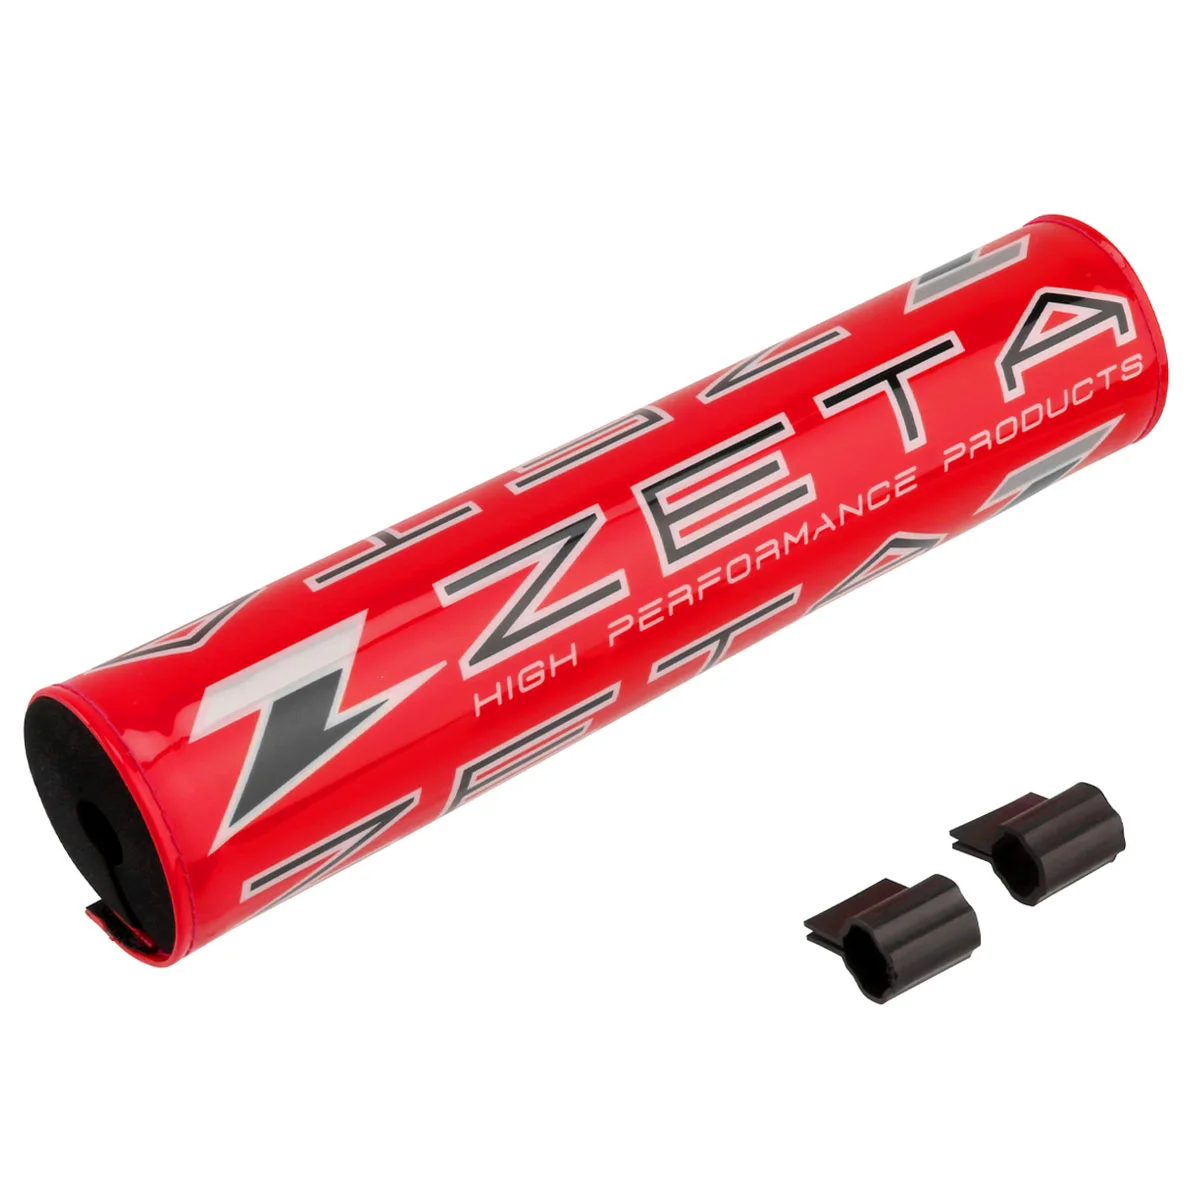 ZETA COMPバーパッド| Dirtbikeplus (ダートバイクプラス)